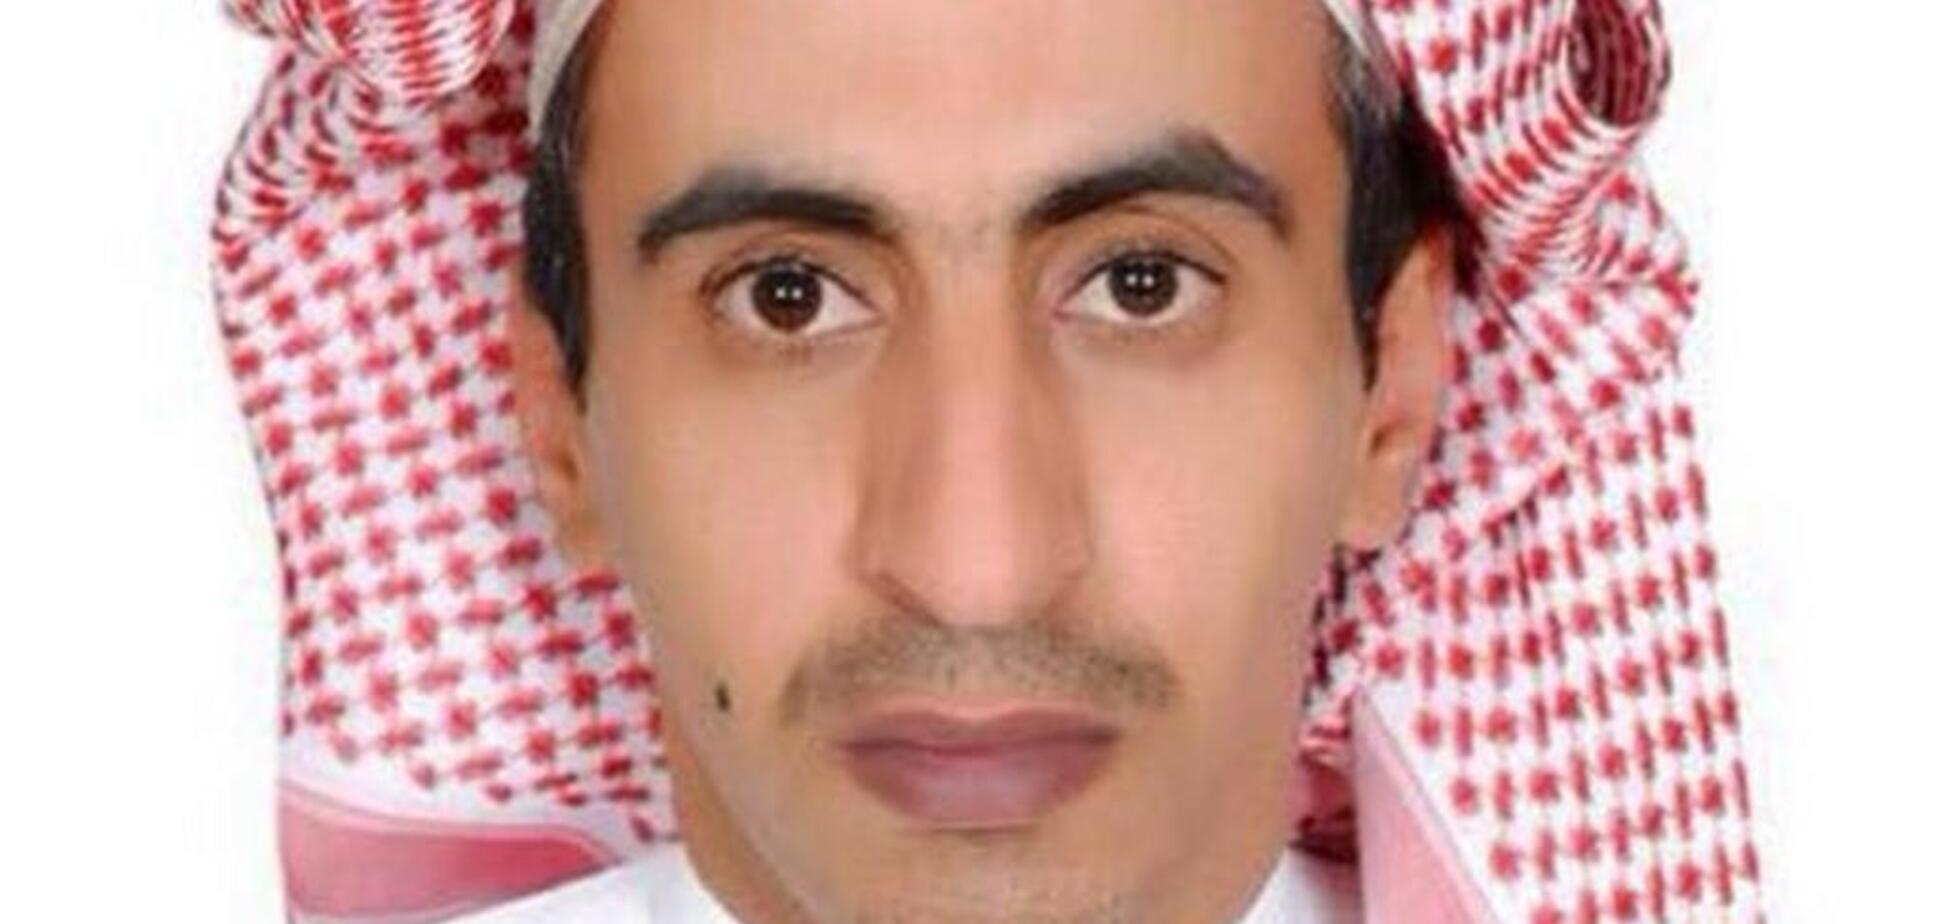 Вслед за Хашогги: в Саудовской Аравии жестоко убили еще одного журналиста